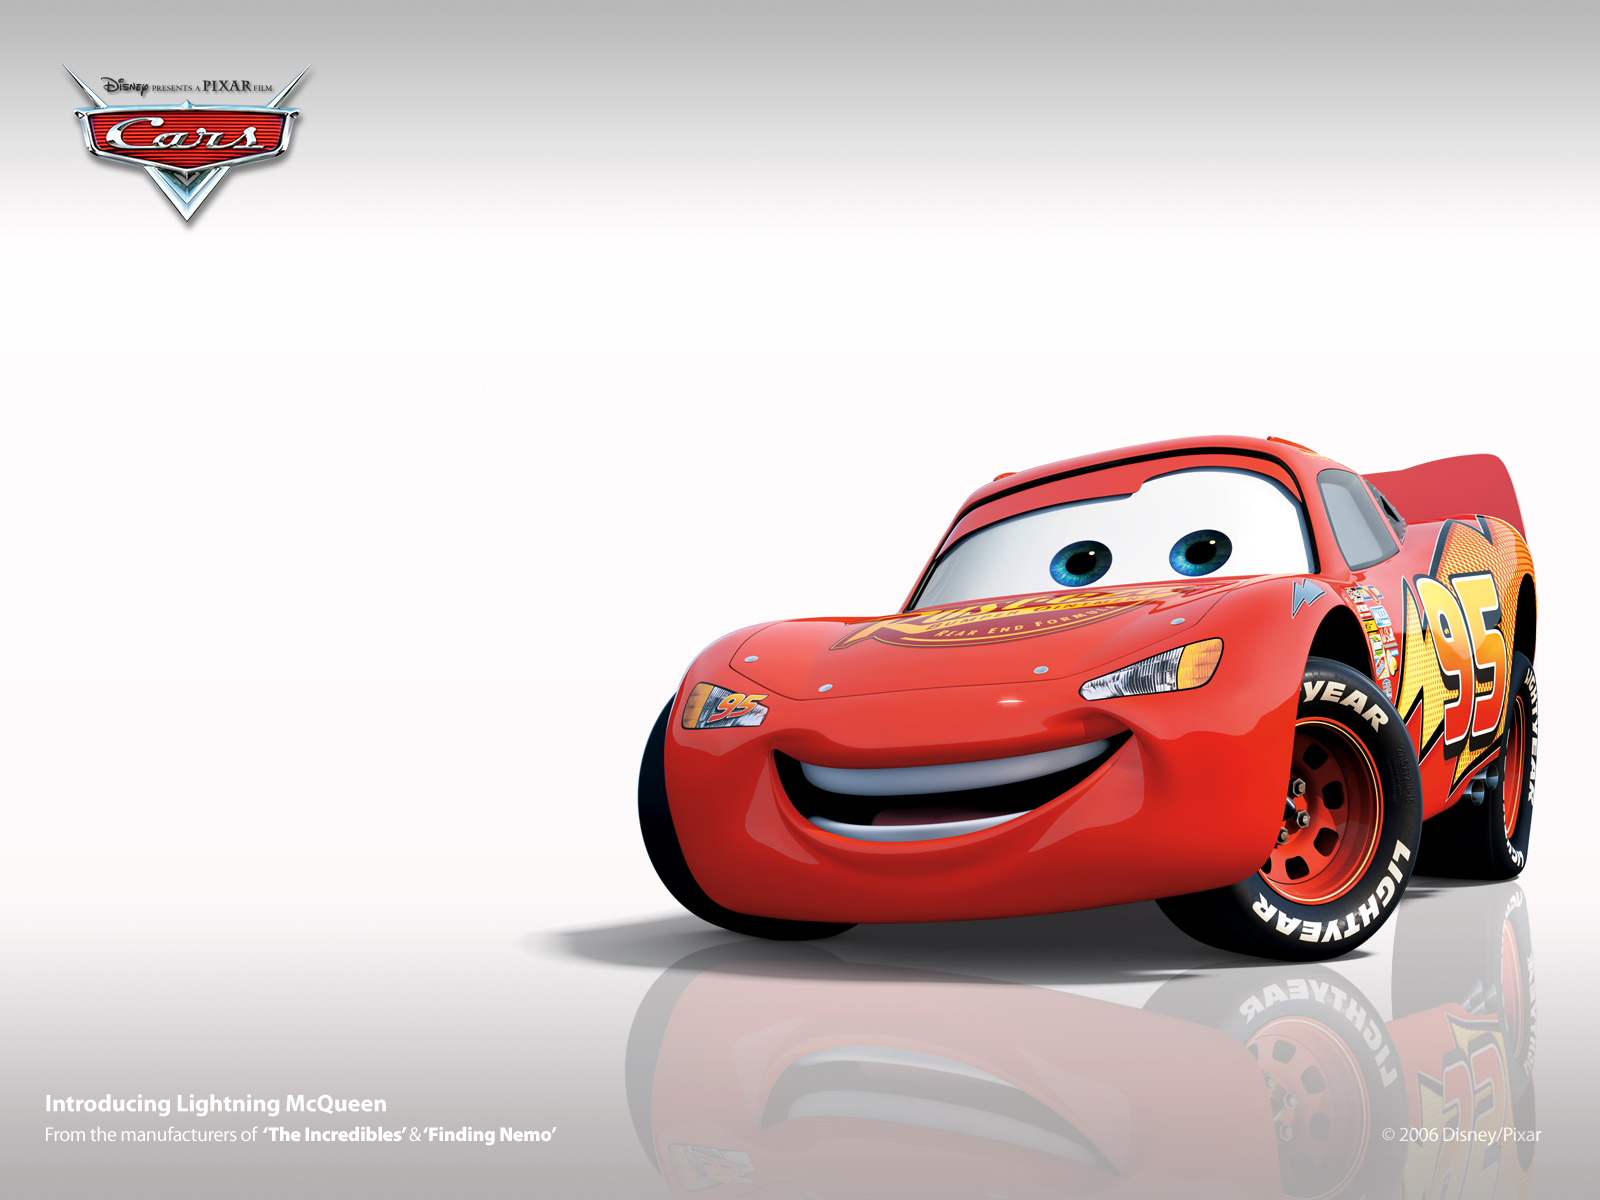 Fondos de pantalla de Cars de Disney Pixar, Wallpapers Gratis